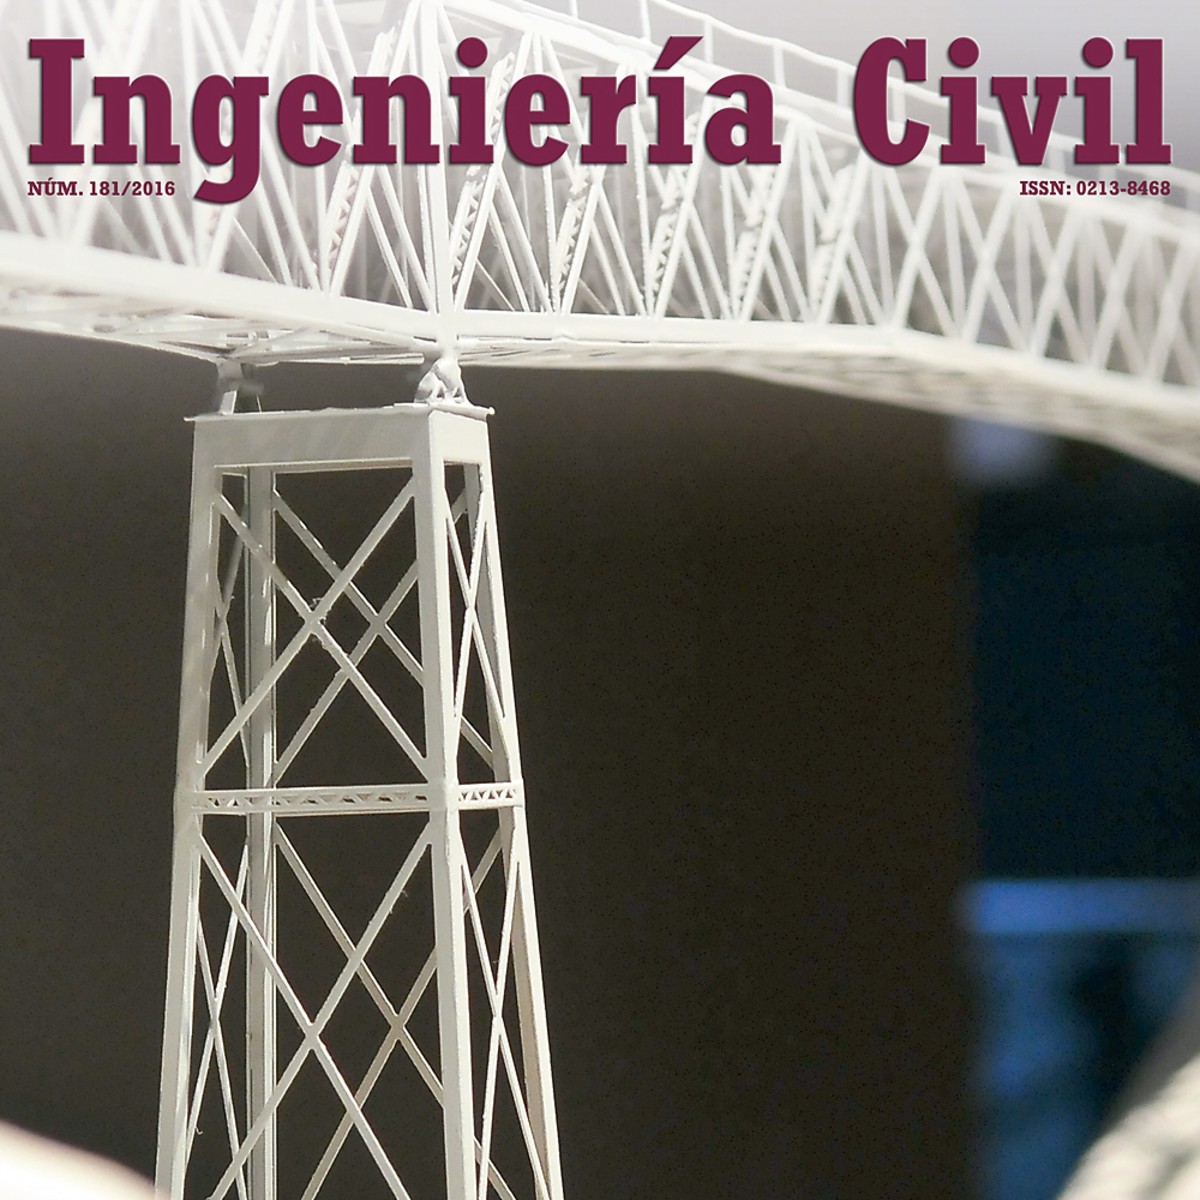 Historia De La Ingenieria Civil En Mexico Pdf